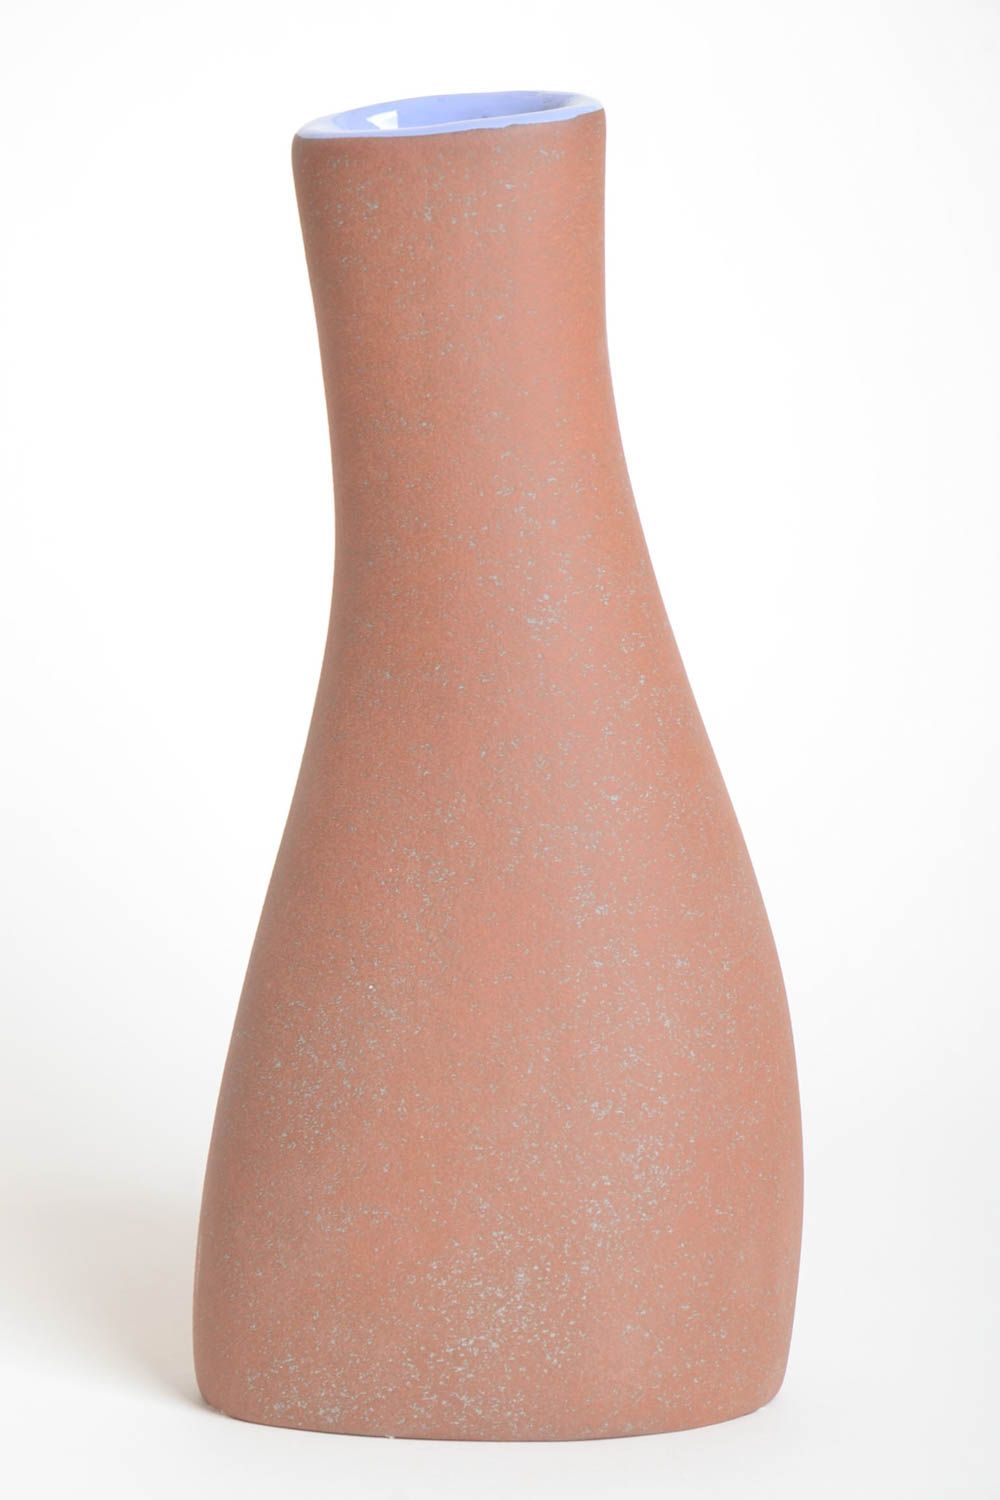 Сувенир ручной работы керамическая ваза для цветов оригинальная ваза для цветов фото 4